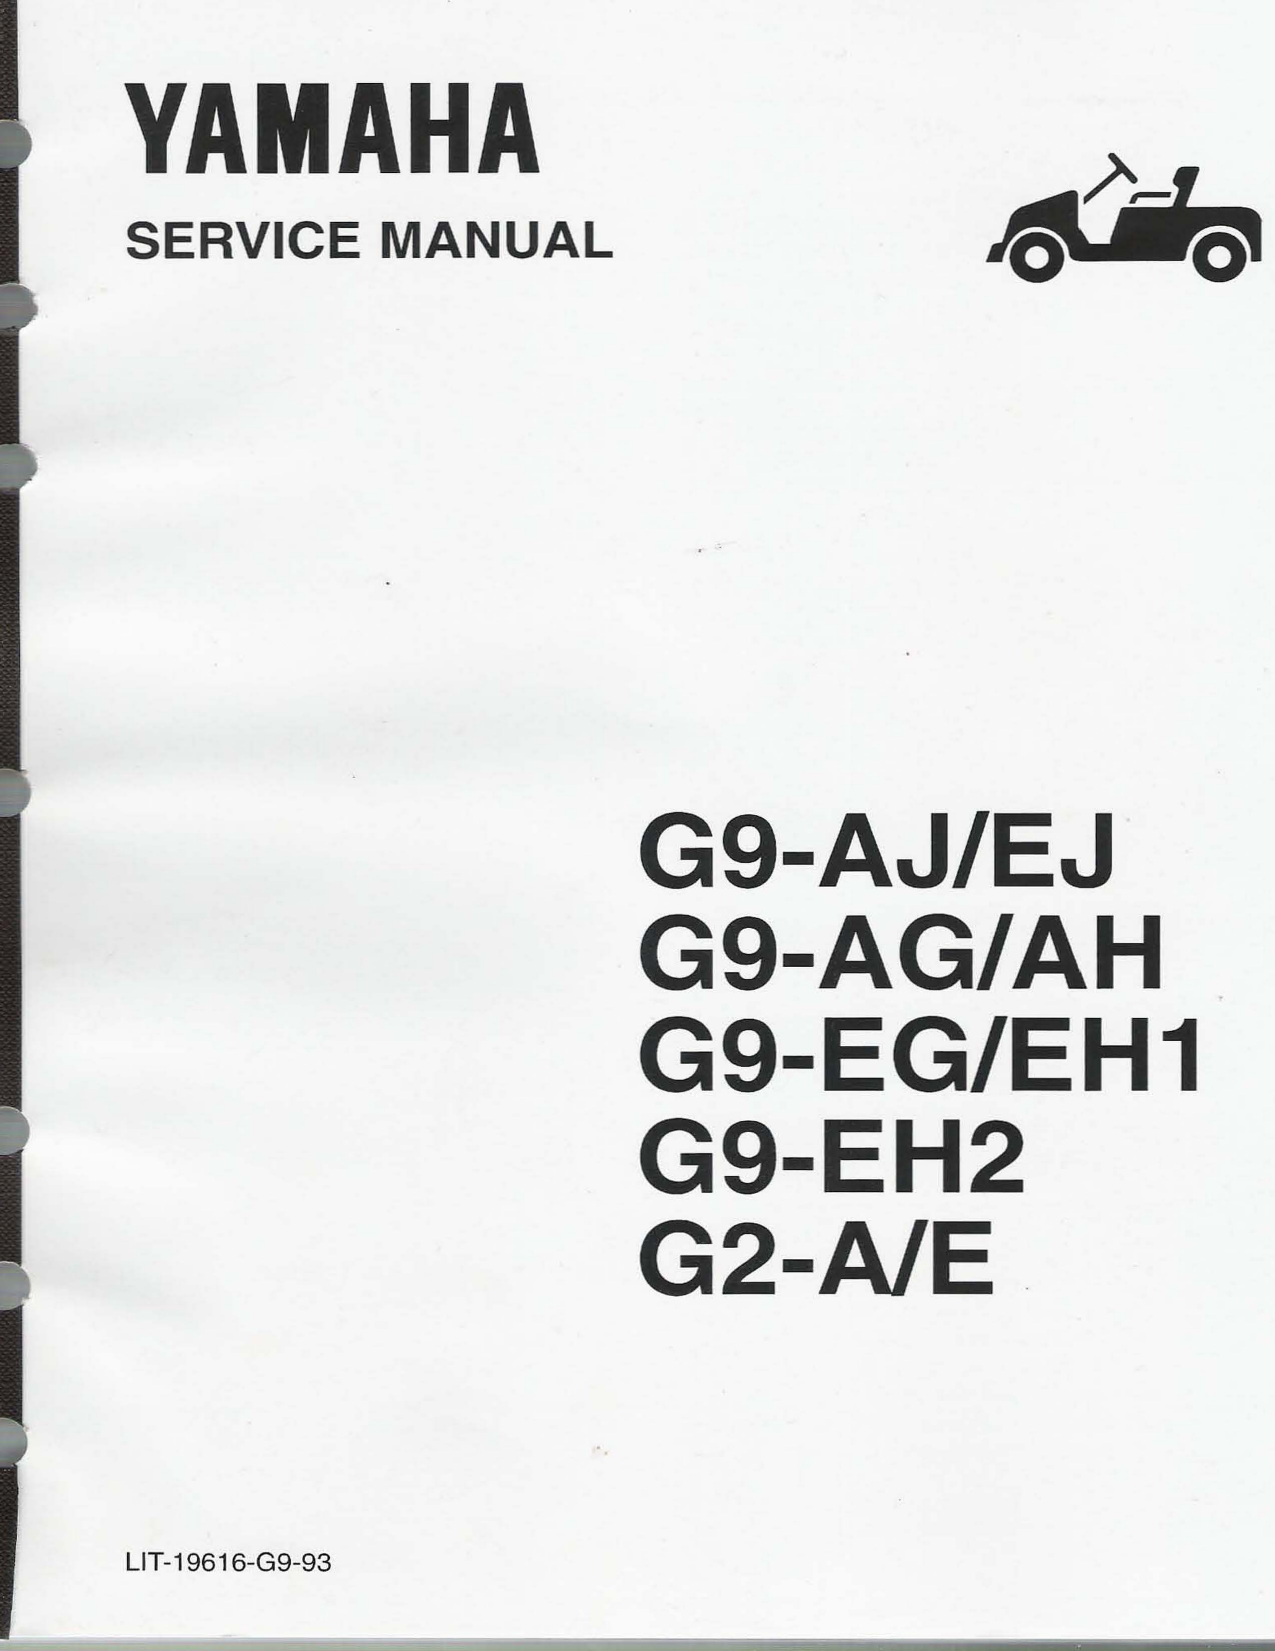 Yamaha Electric Gas Golf Cart G9-AJ/EJ, G9-AG/AH, G9-EG/EH1, G9-EH2, G2-A/E repair manual Preview image 3